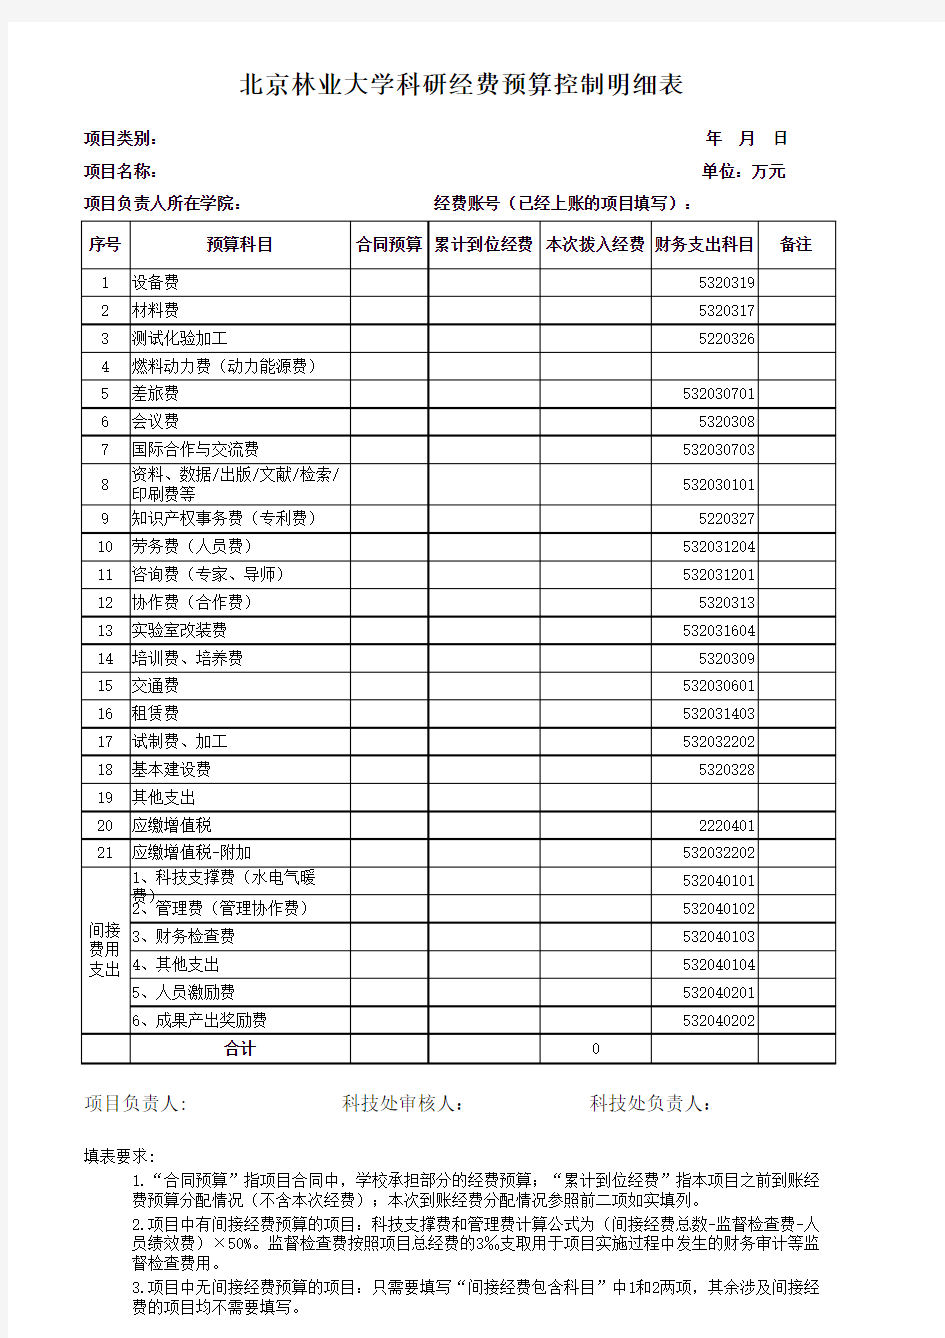 北京林业大学 科研经费预算控制明细表(2013版)